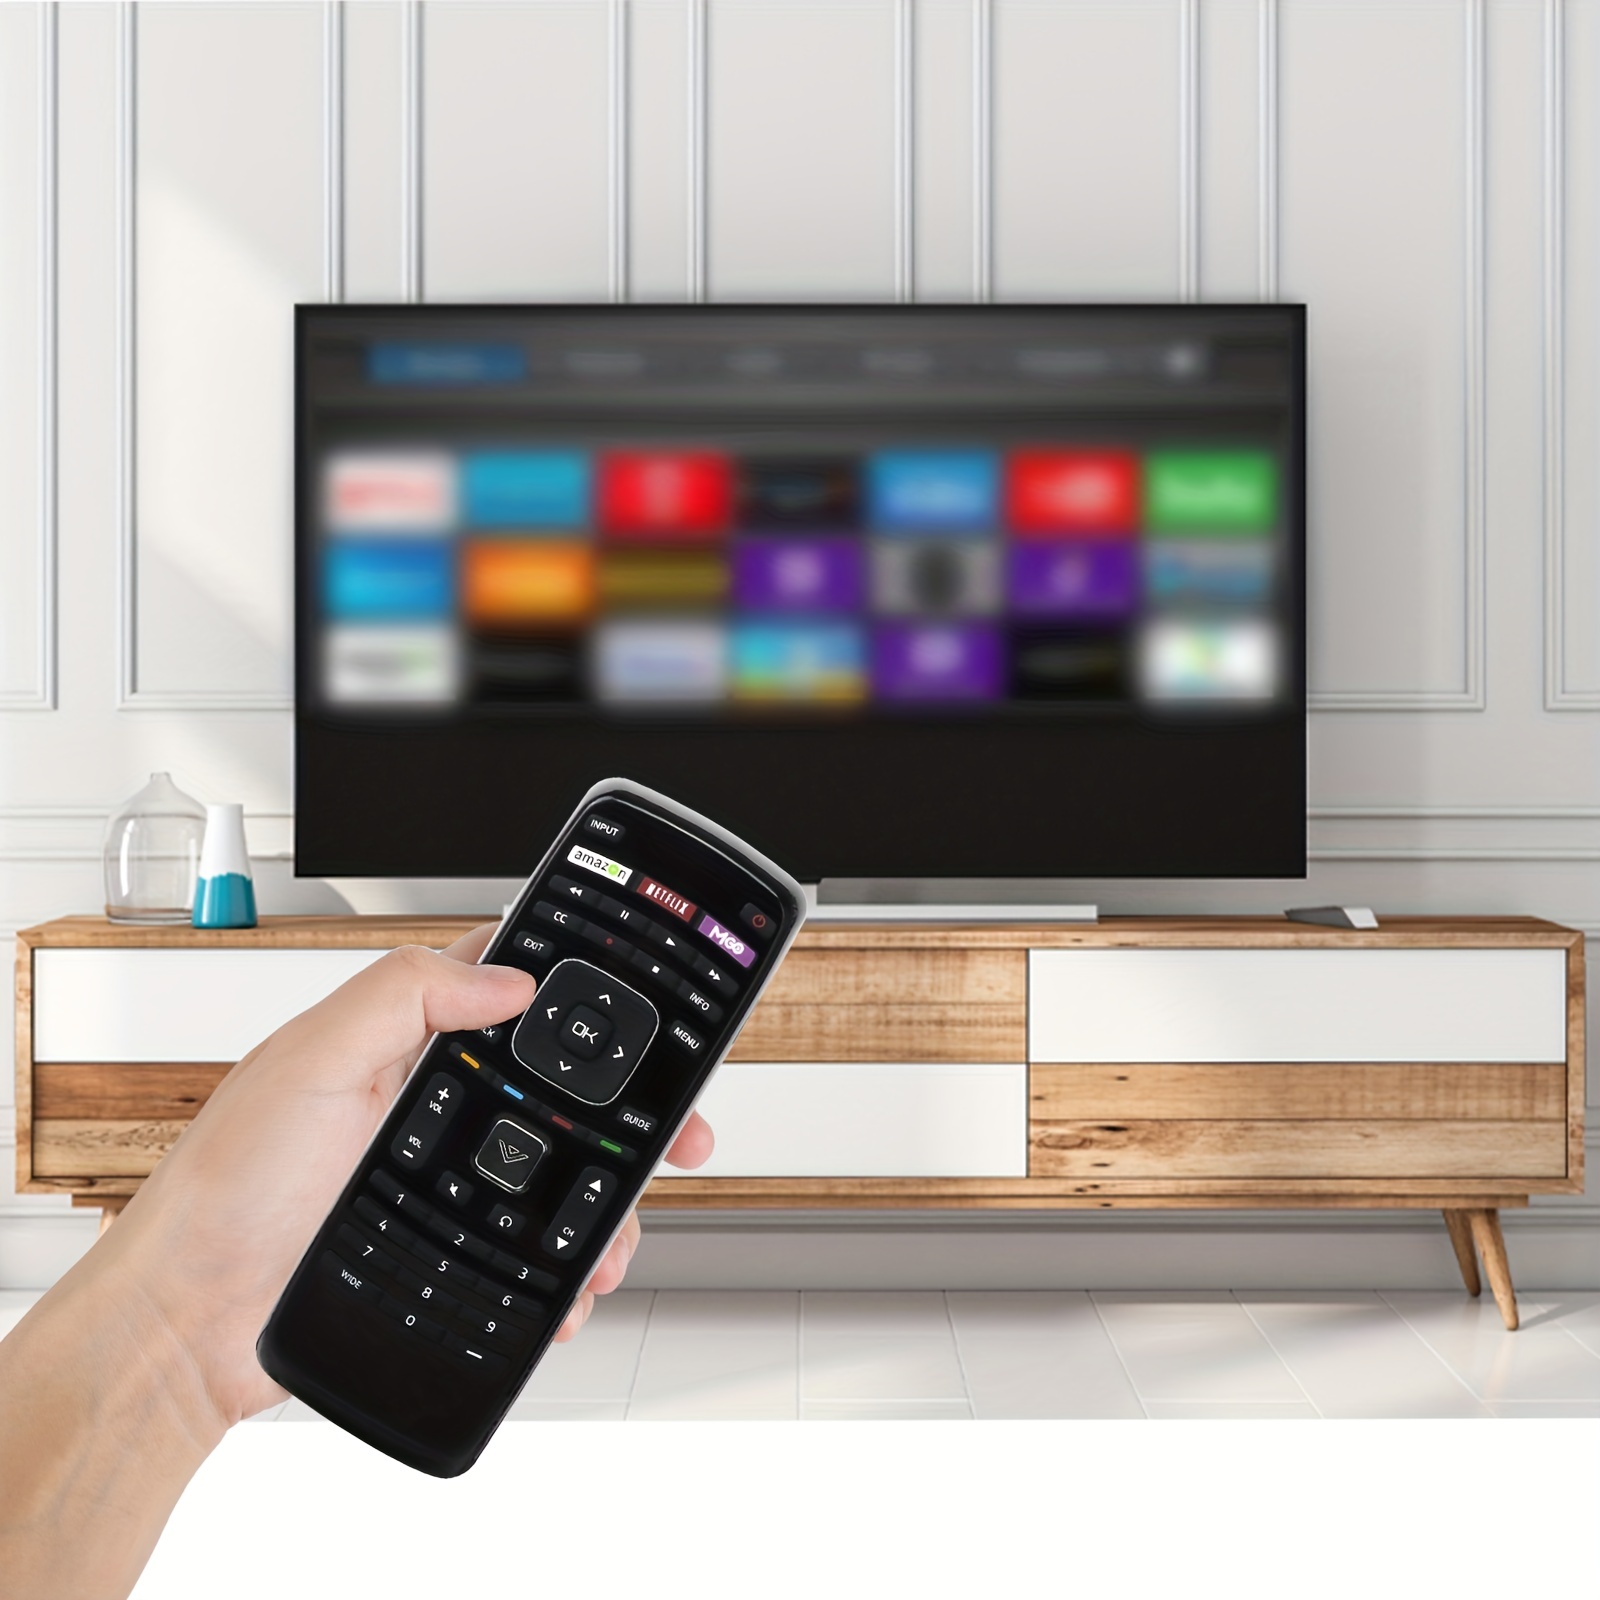  Philips Mando a distancia universal con función Find It y  aplicación de teléfono inteligente para Samsung, Vizio, Sony, Sharp, Roku,  Apple TV, RCA, Panasonic, Smart TVs, Blu Ray, DVD, 4 dispositivos